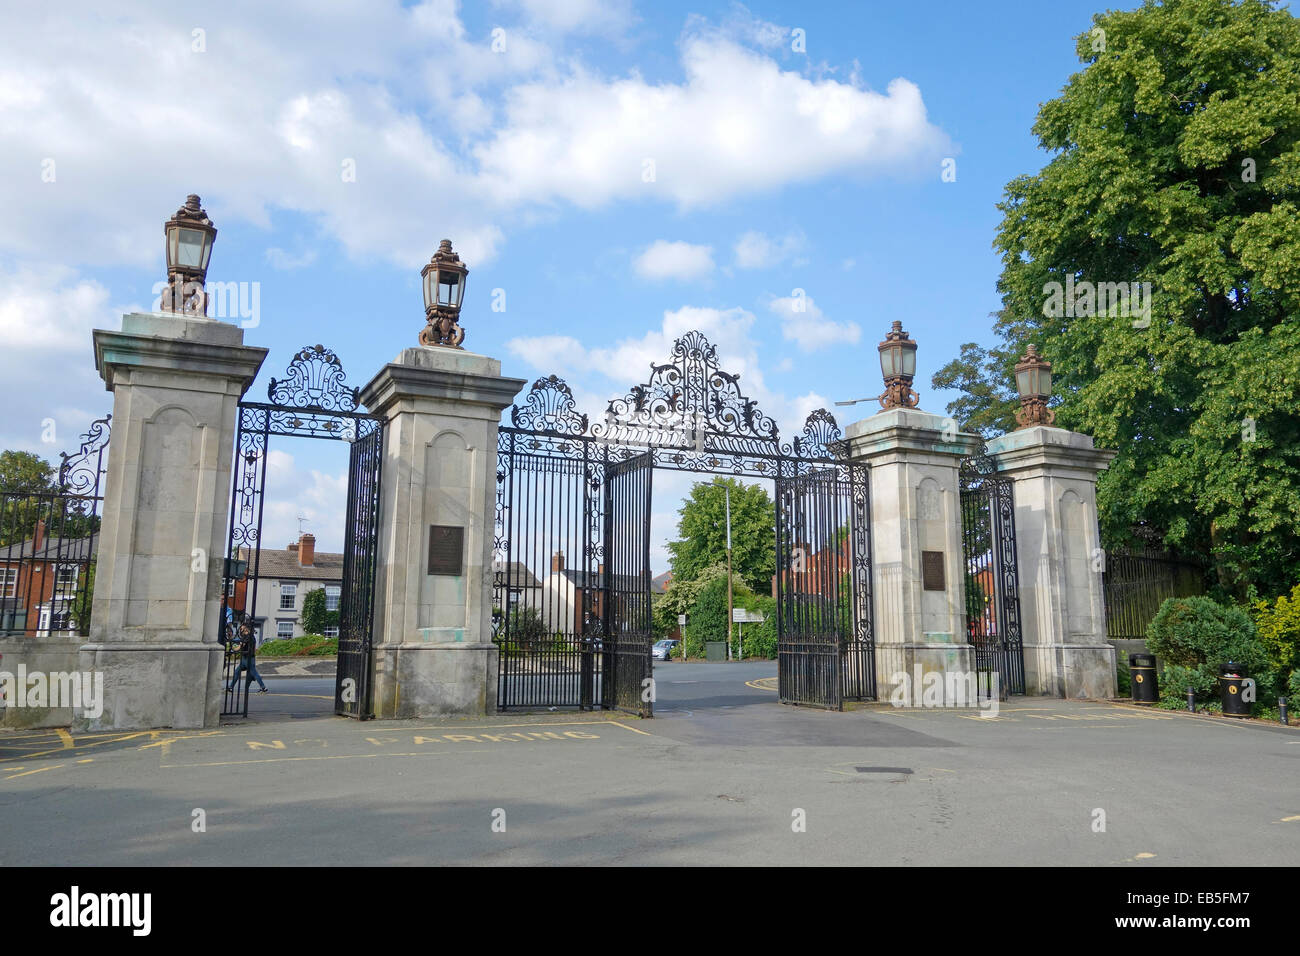 Entrance Gates to Mary Stevens Park, Stourbridge, West Midlands, England, UK Stock Photo